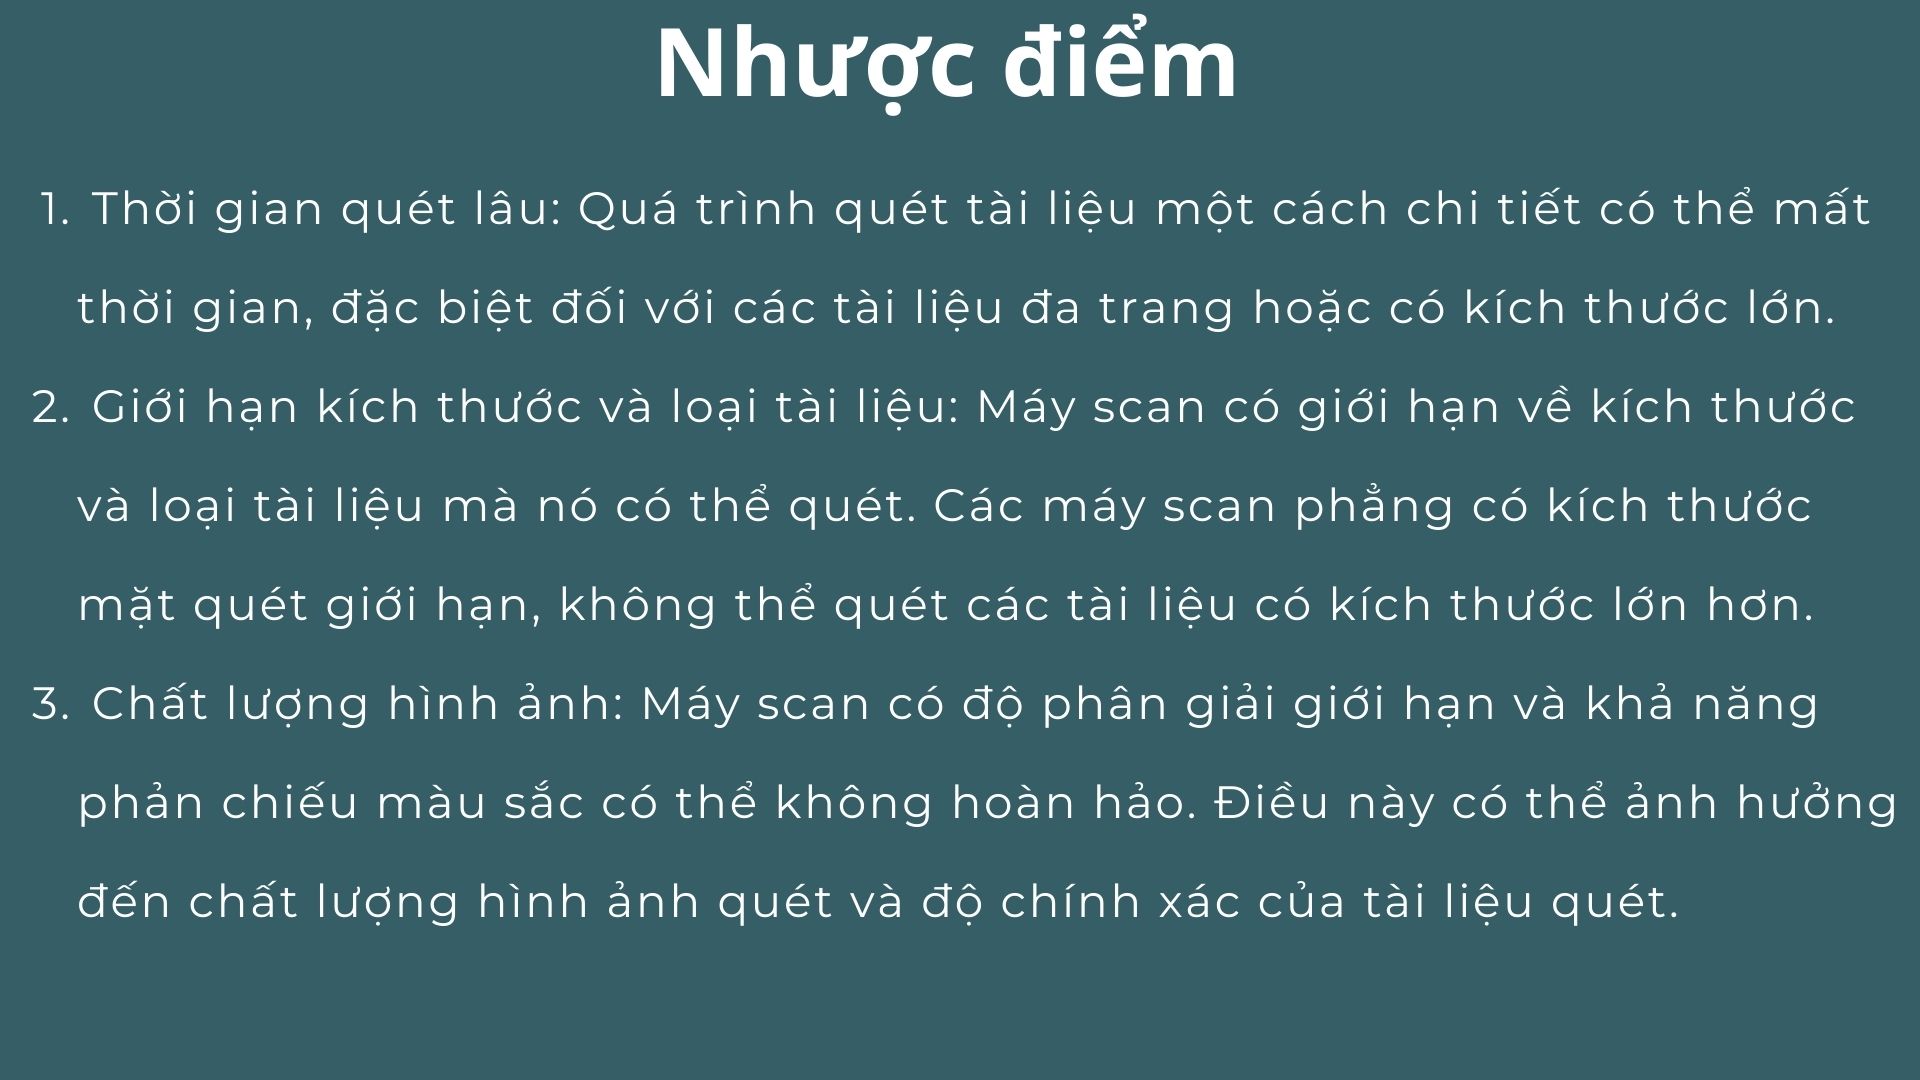 tieu-chi-lua-chon-may-scan-van-phong-chat-luong-09